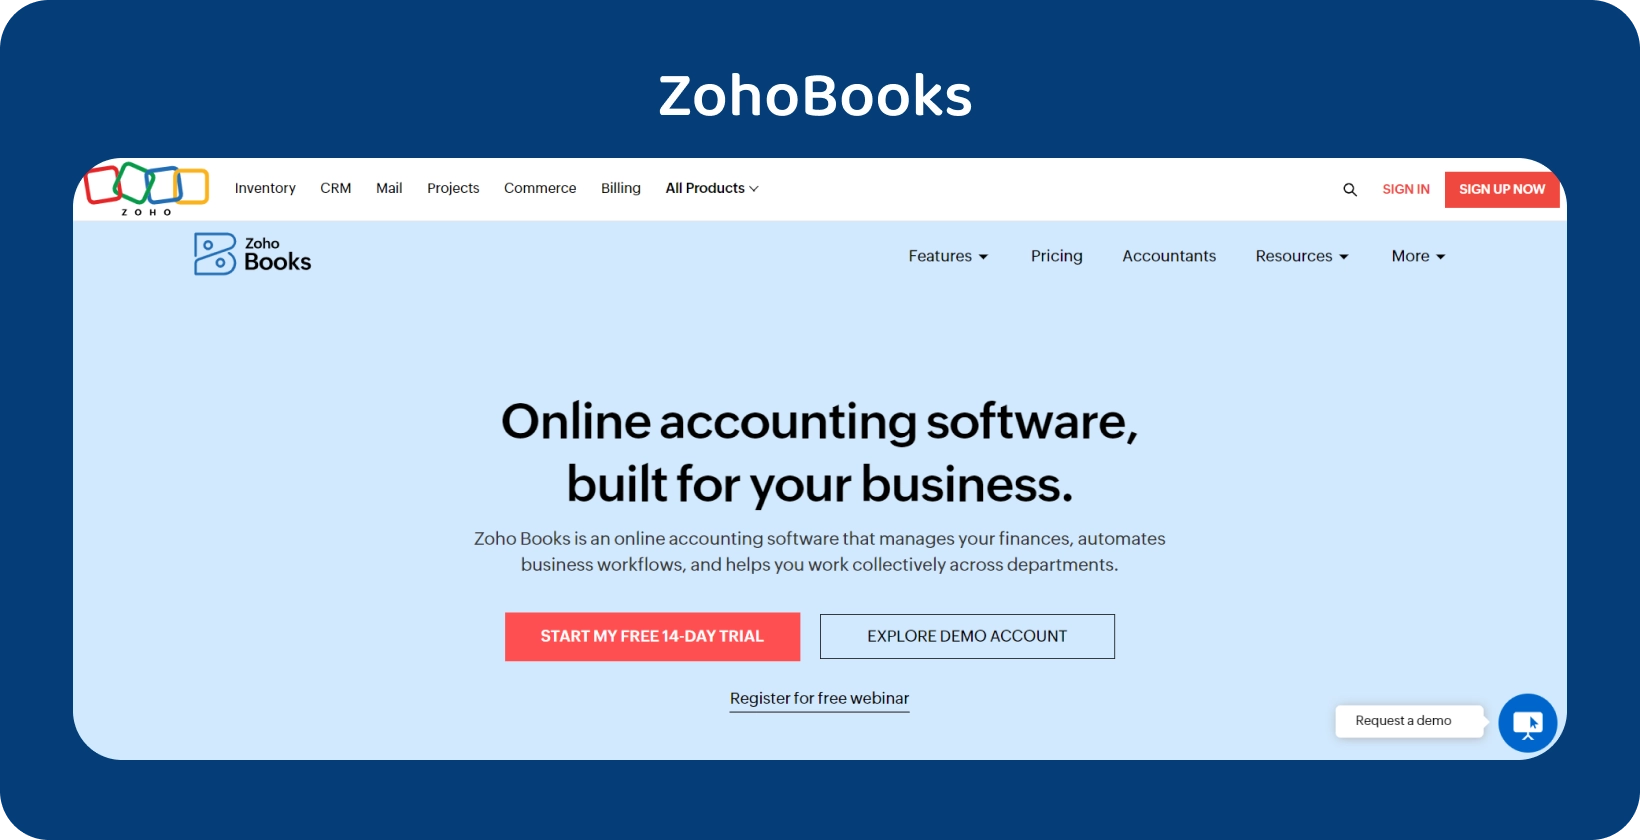 Zoho Books kotisivun banneri korostaa sen liiketoimintaan räätälöityä online-kirjanpito-ohjelmistoa virtaviivaiseen toimintaan